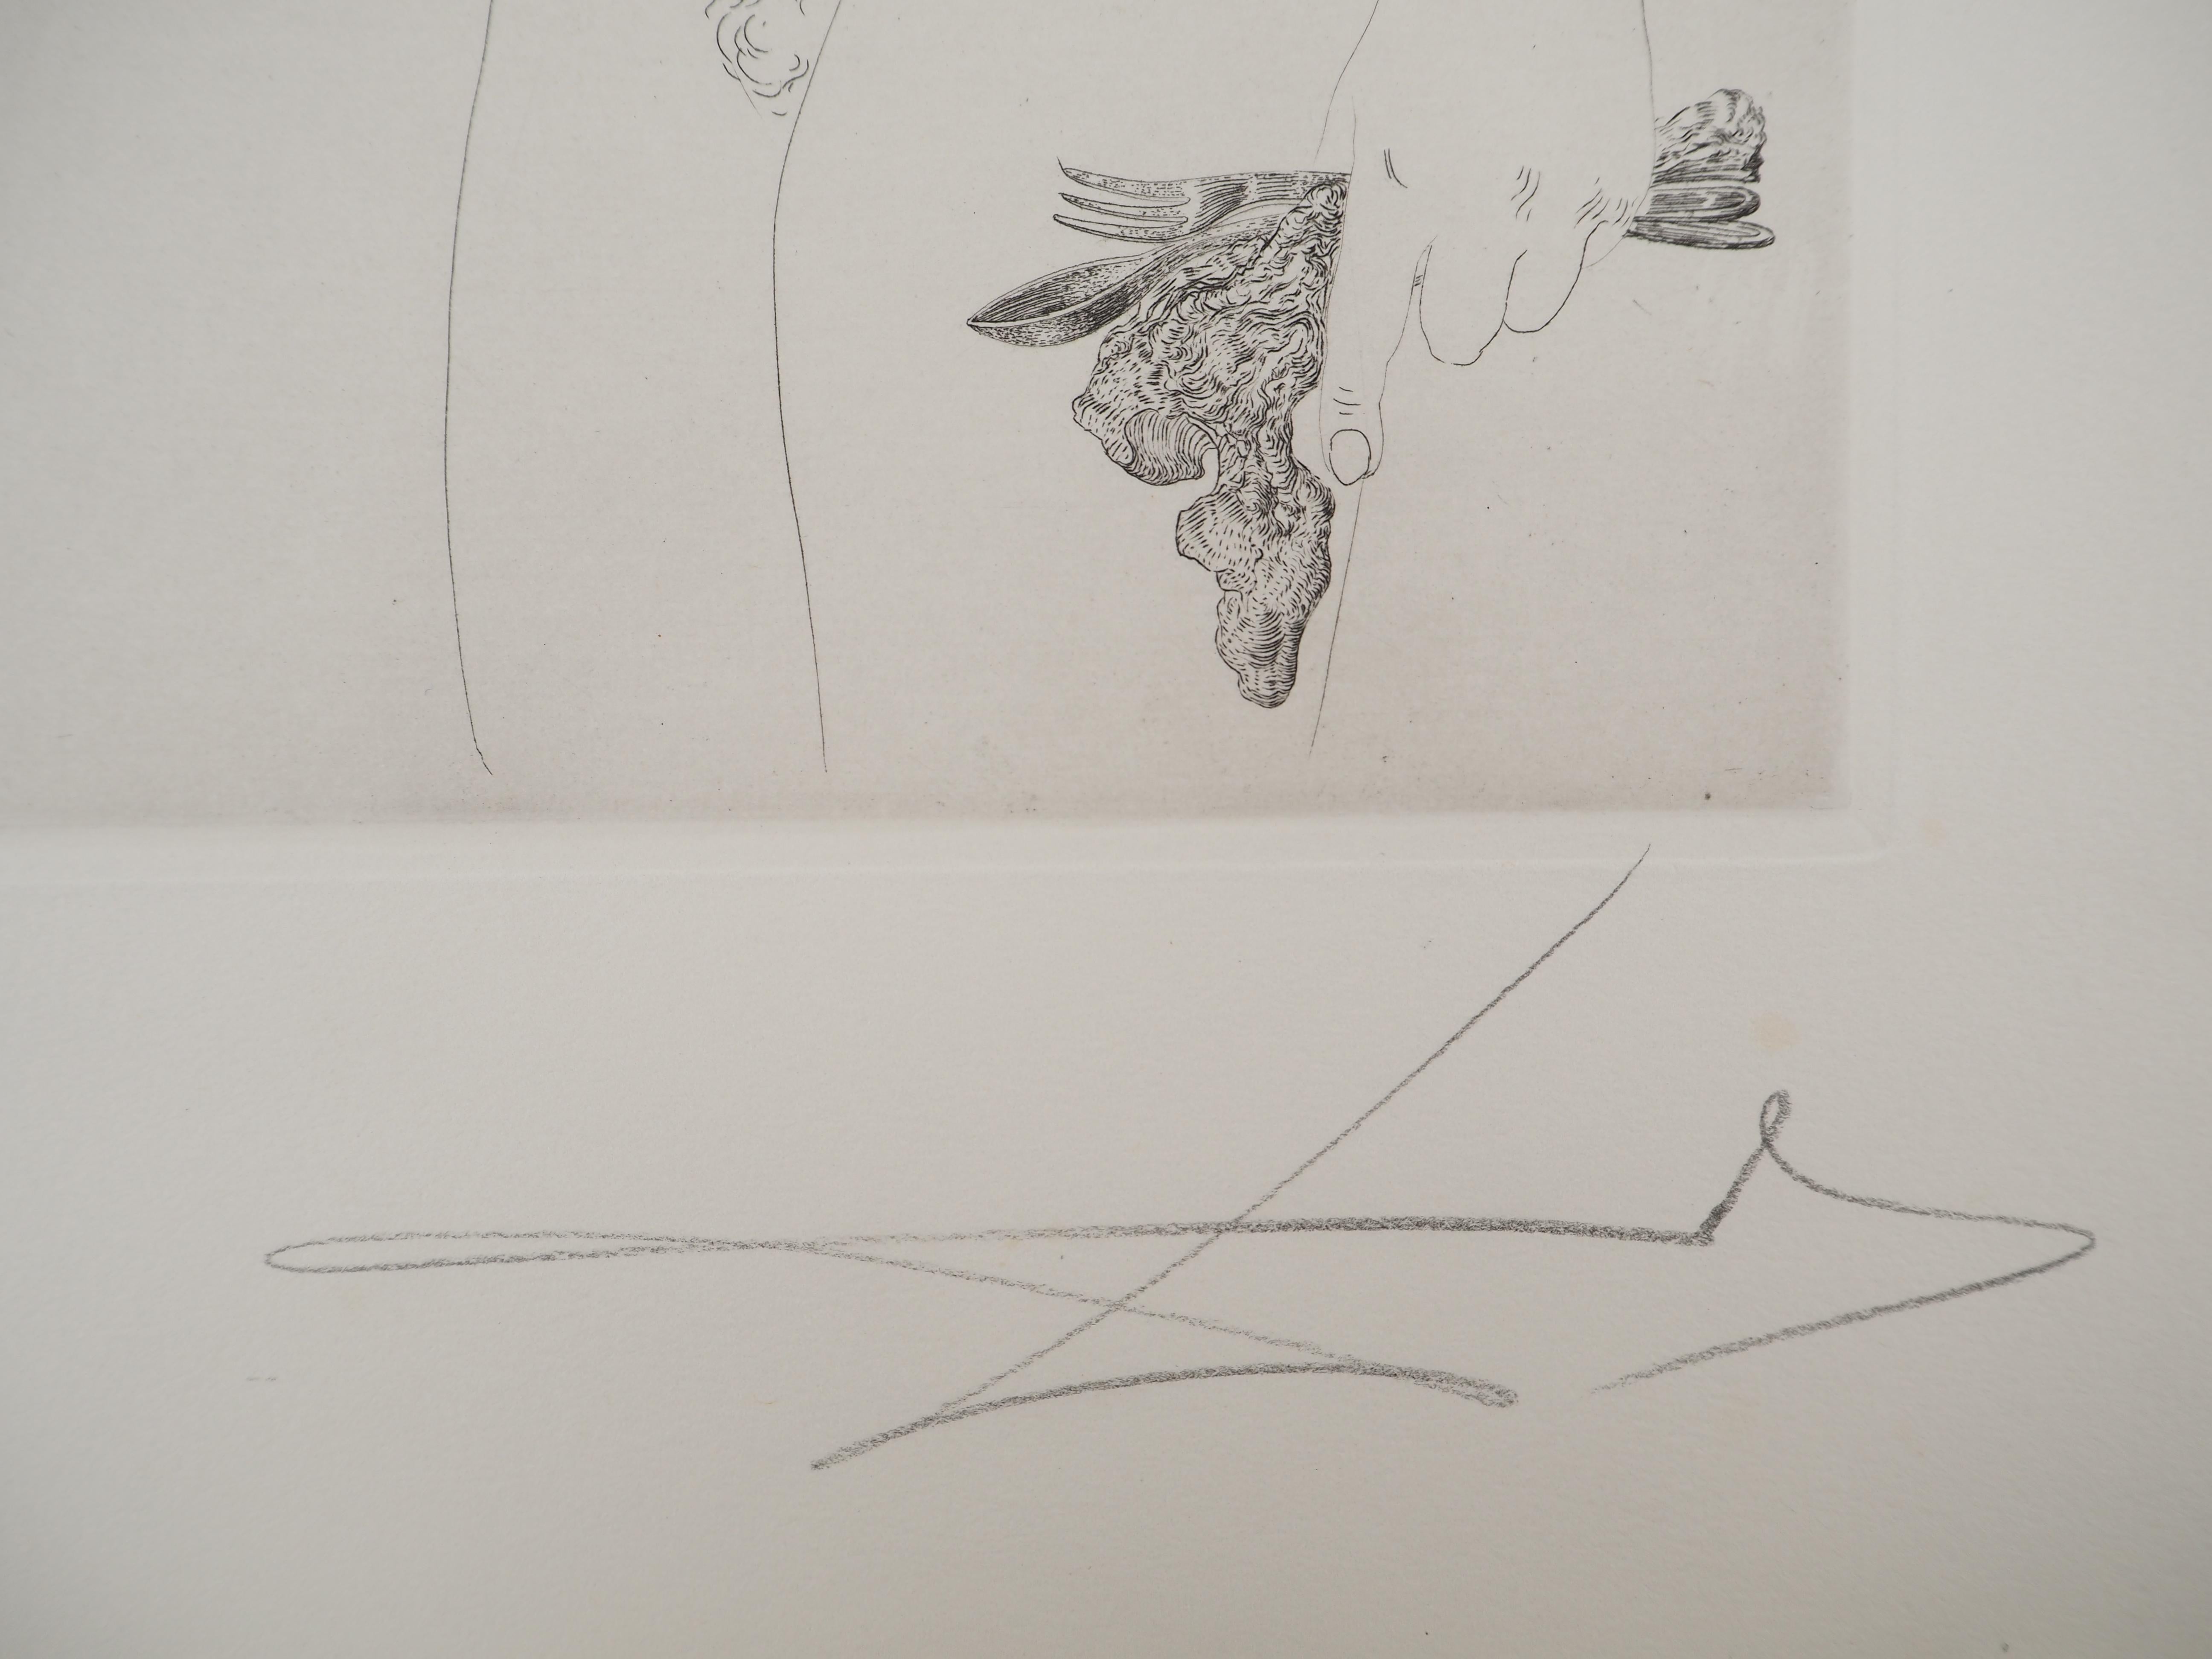 Maldoror : Nu rêveur - eau-forte originale, signée à la main, 1975 (feuille n° 34-2) - Print de Salvador Dalí